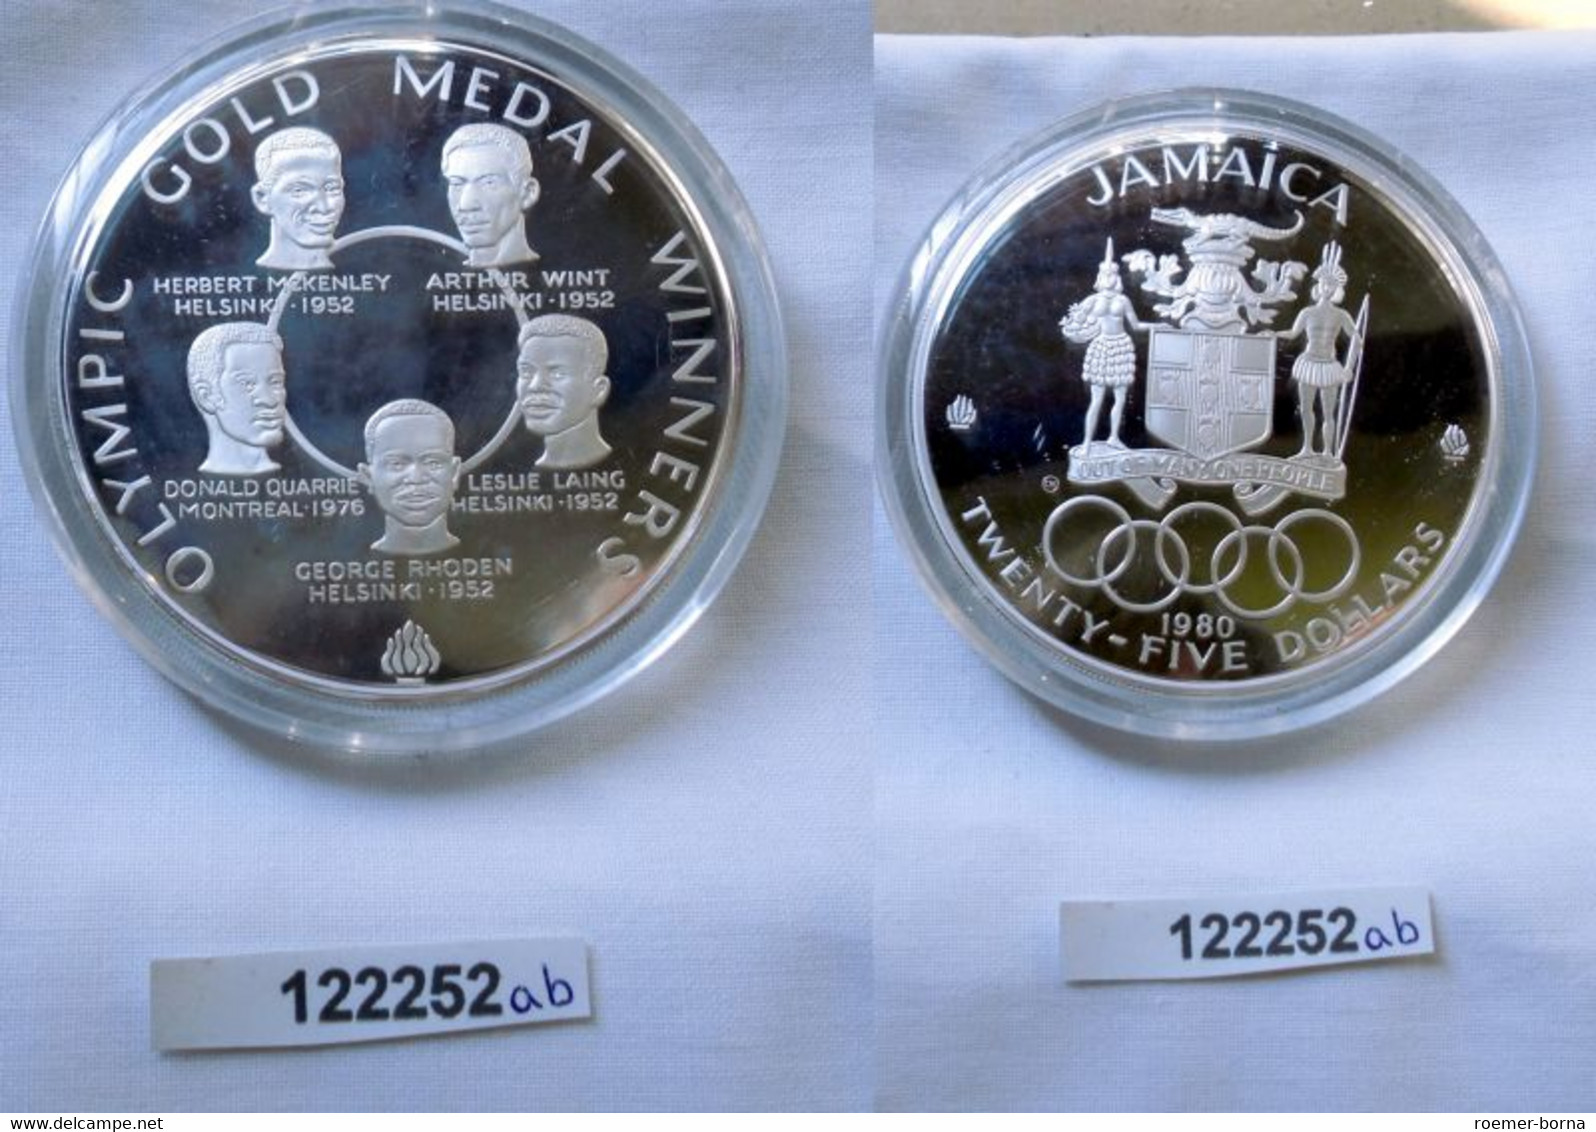 25 Dollar Silber Münze Jamaica Olympische Spiele 1980 OVP (122252) - Trinidad & Tobago